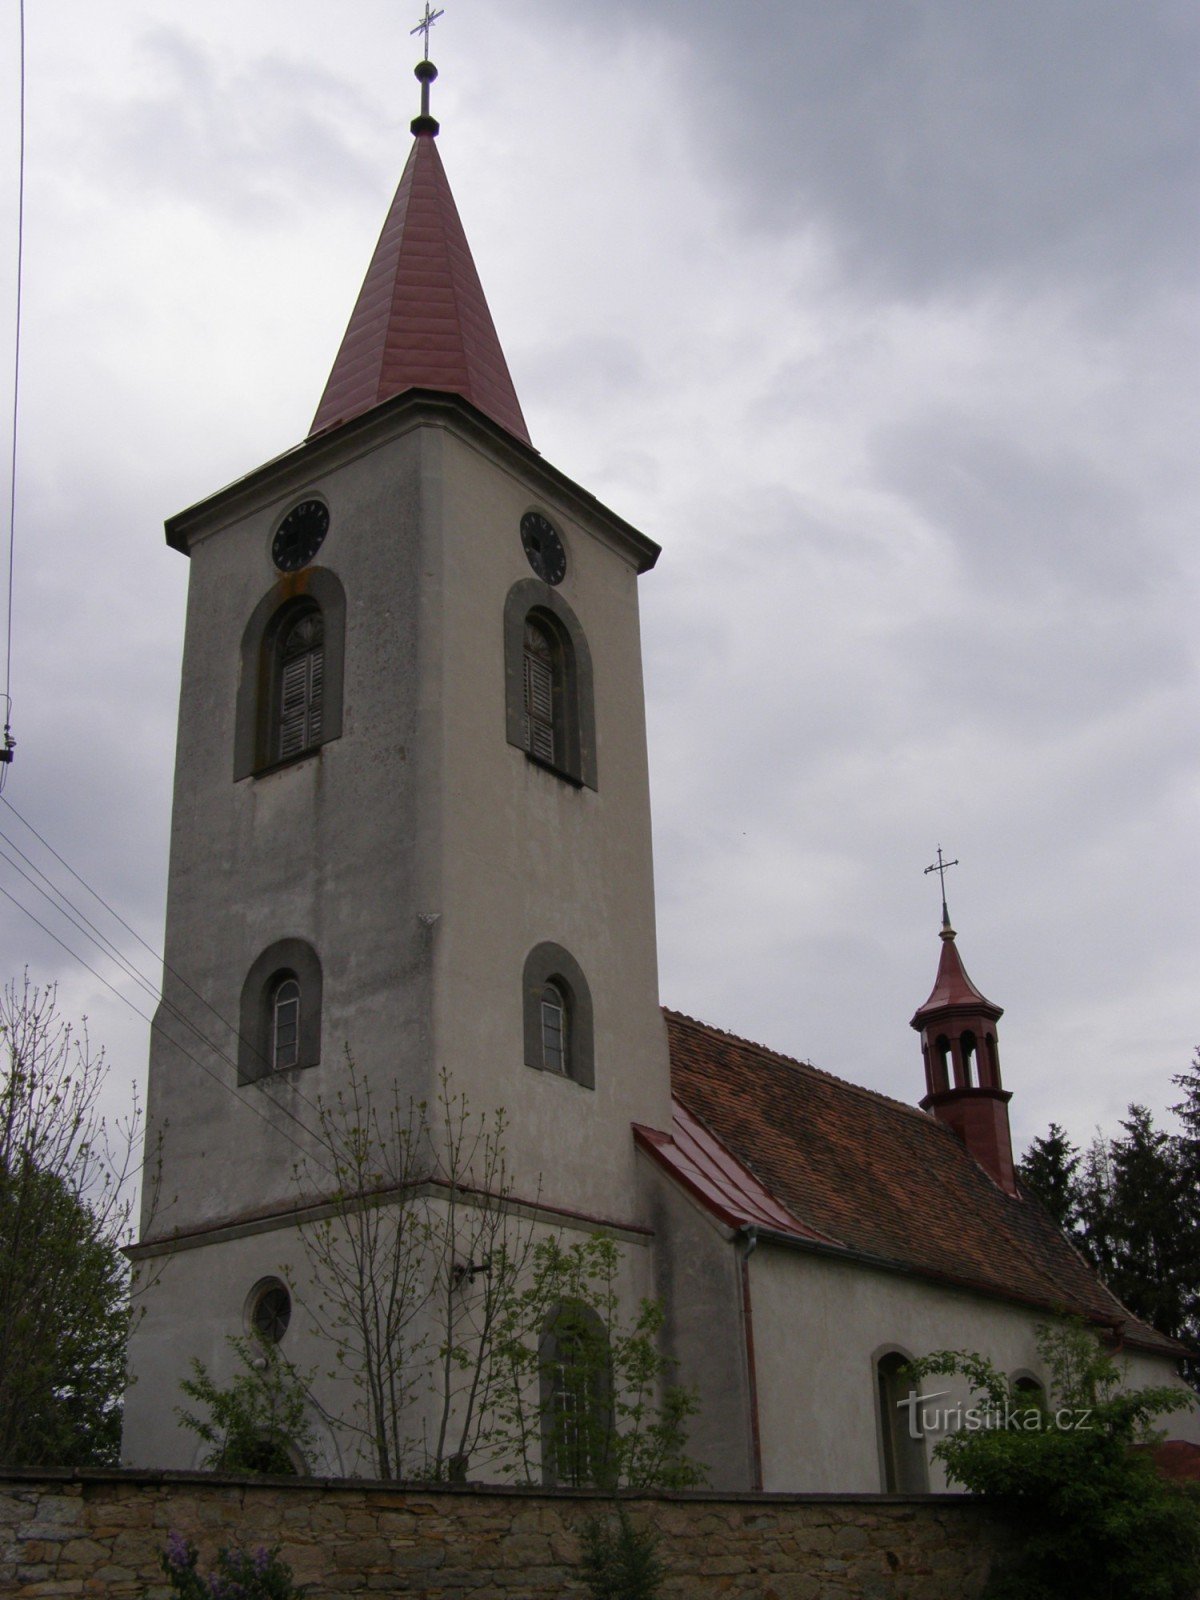 Semonice - cerkev sv. Trgi